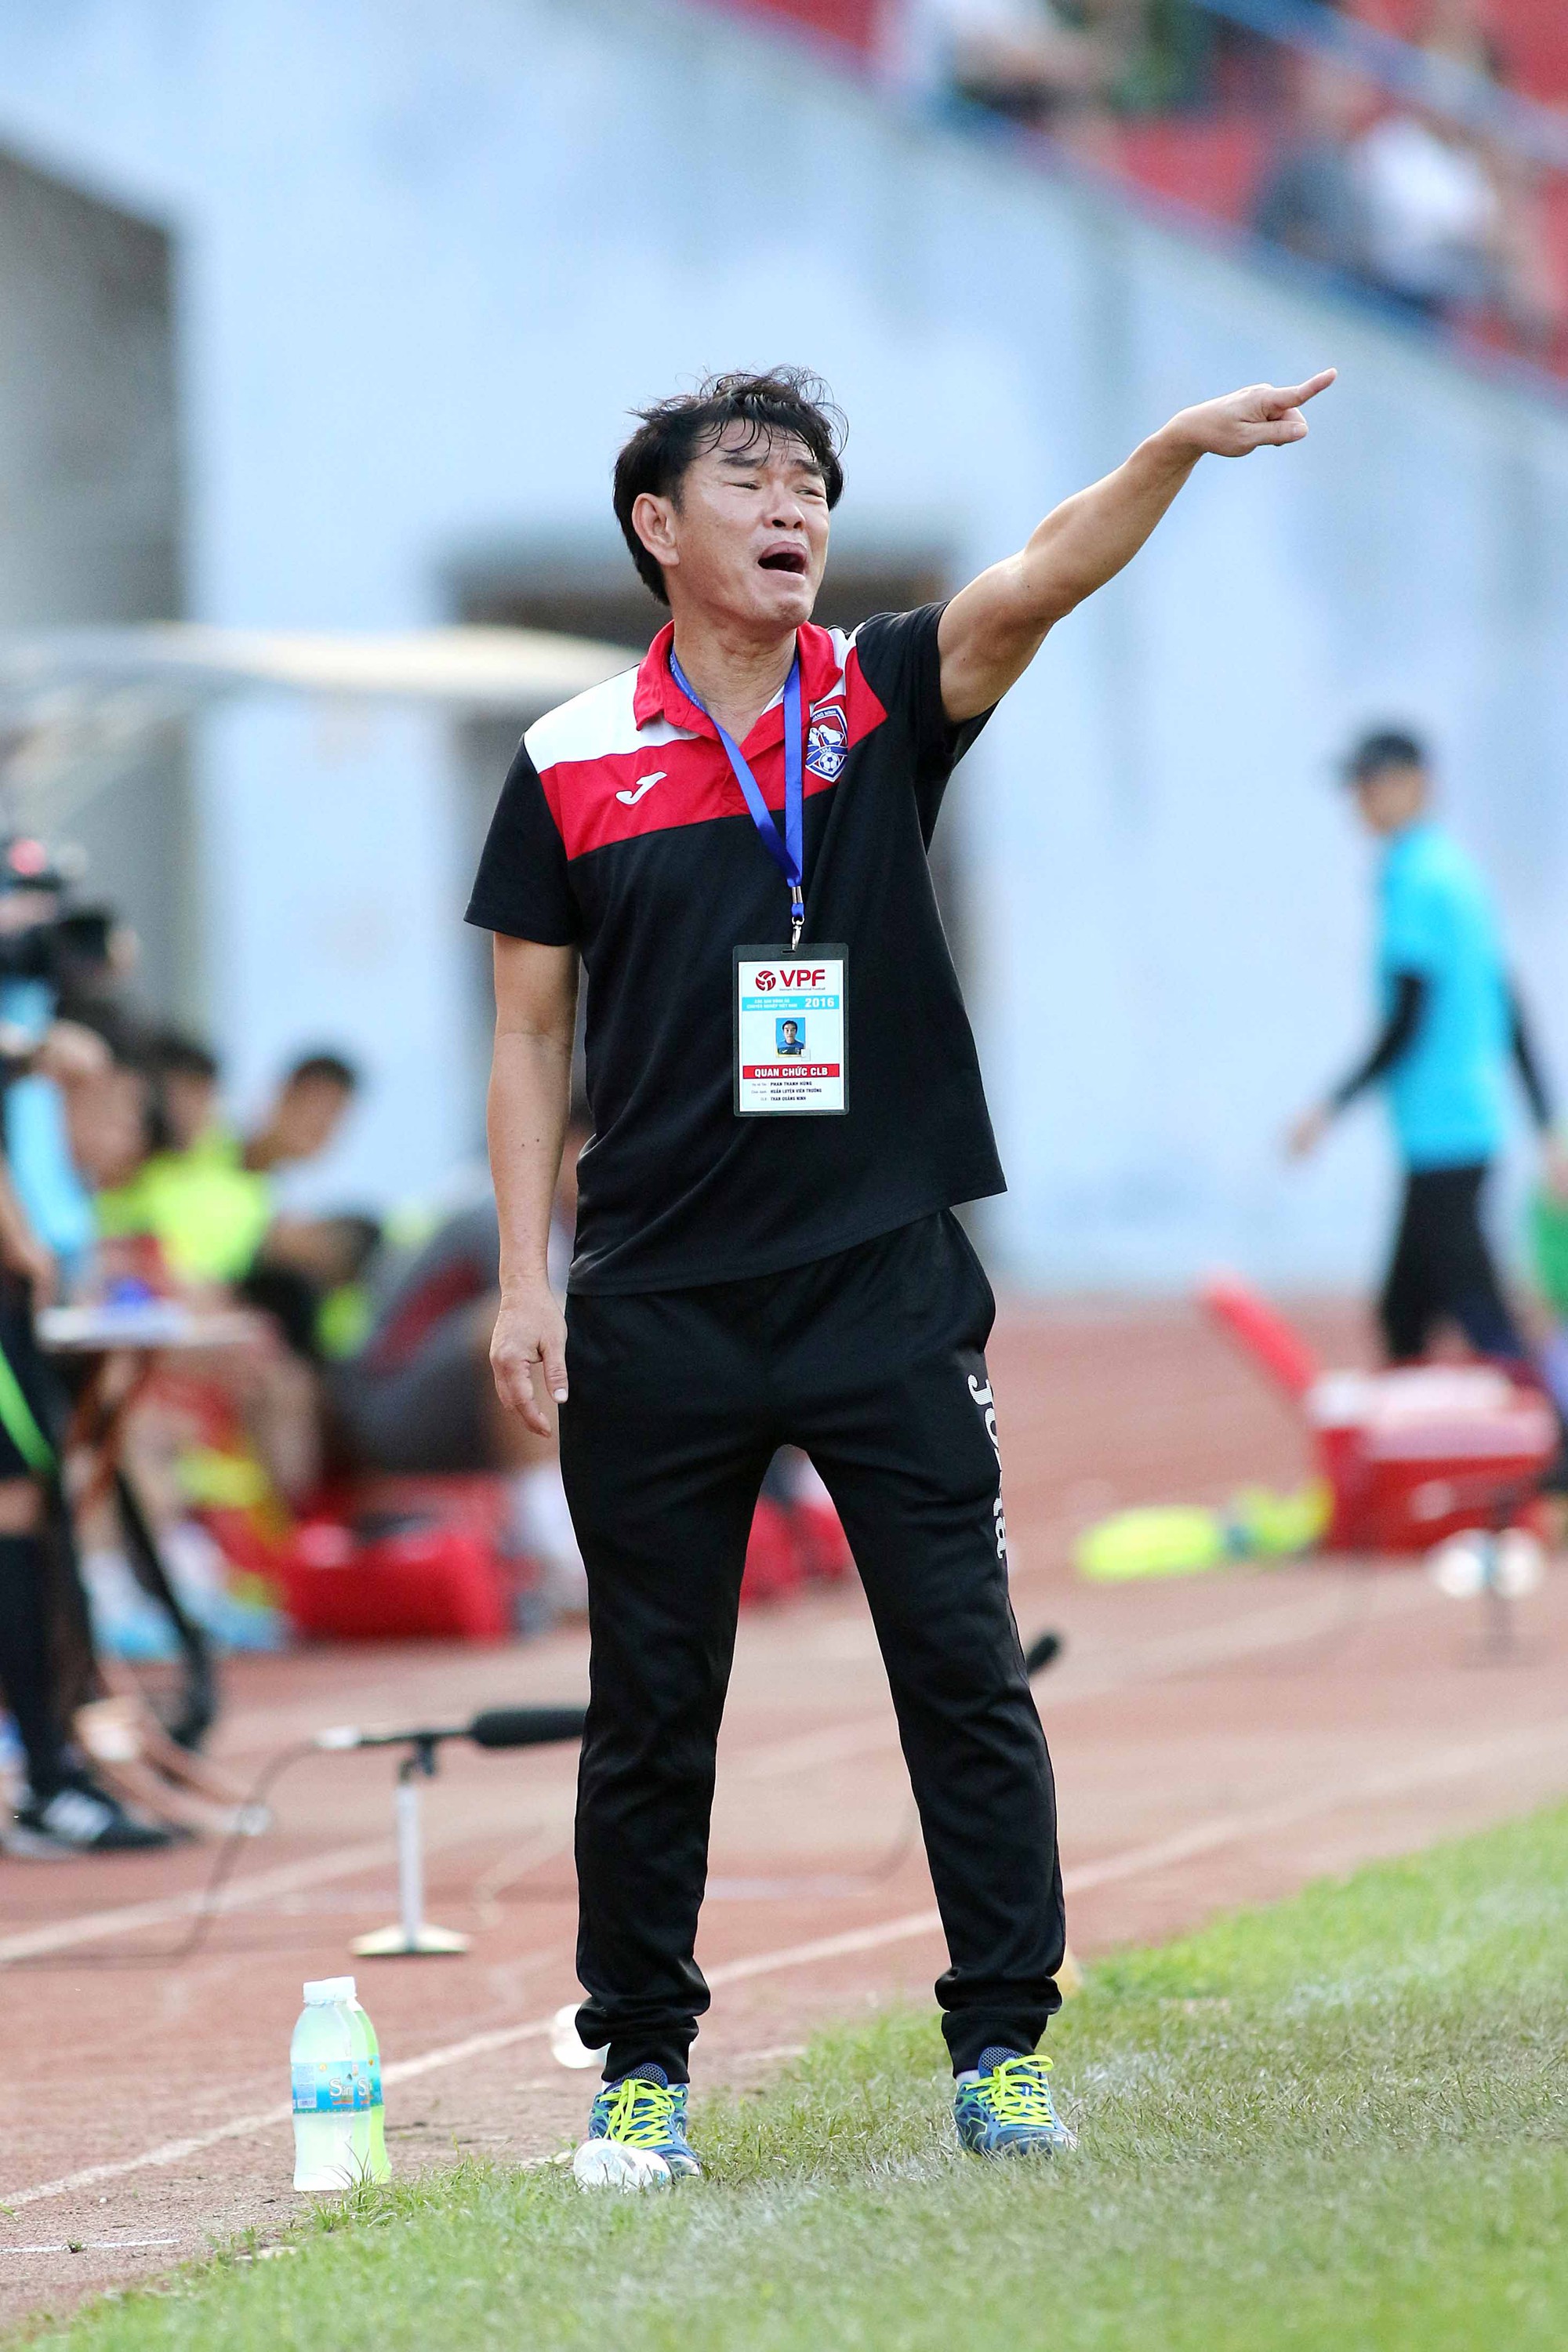 HLV Phan Thanh Hùng cho rằng các cầu thủ sẽ không tự làm ảnh hưởng đến miếng cơm manh áo vì EURO. Ảnh: Tuấn Tú.